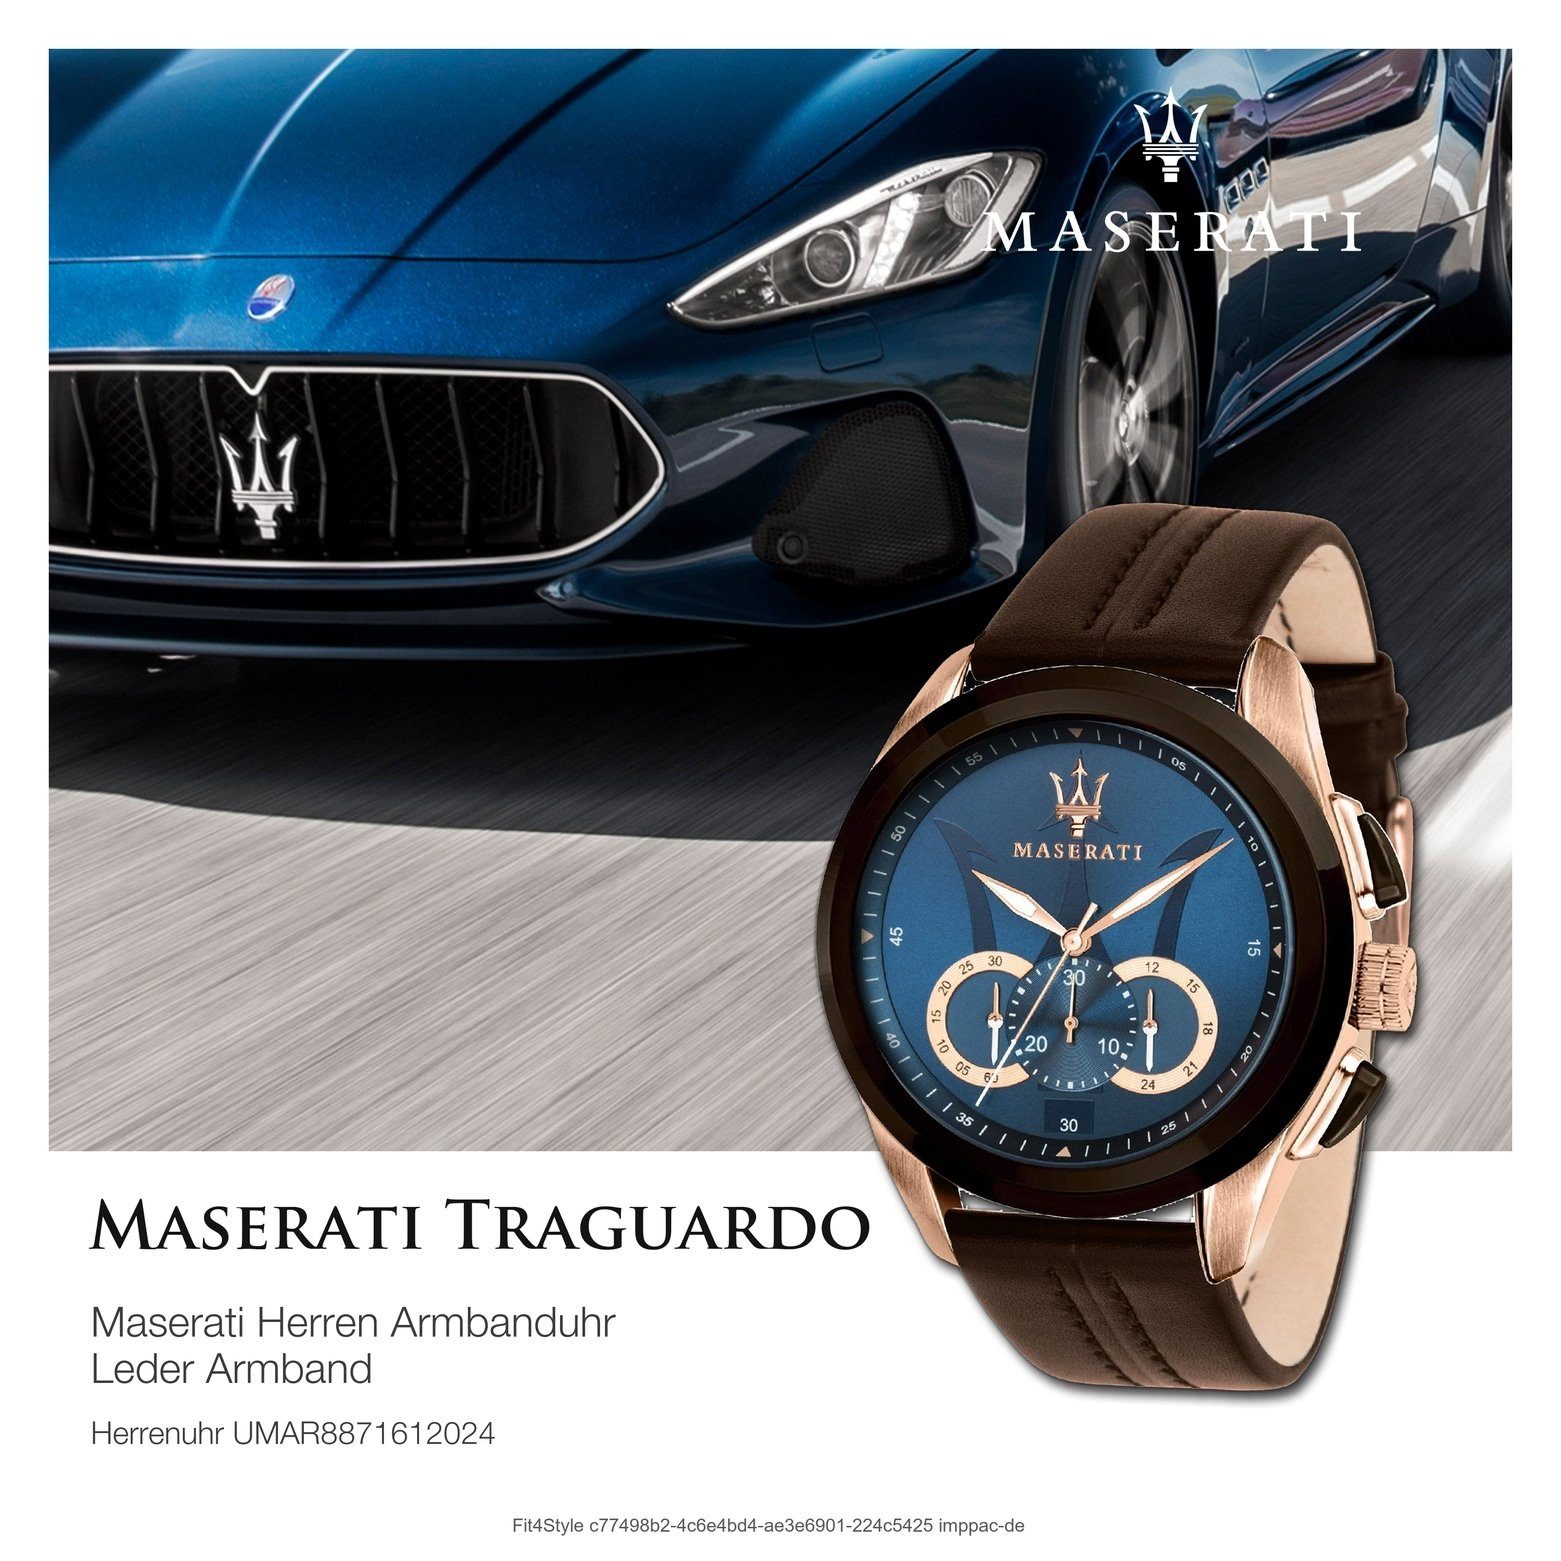 Made-In groß braun Herrenuhr 55x45mm) Chronograph Maserati Lederarmband, Chronograph, rund, Herren (ca. Uhr Italy MASERATI